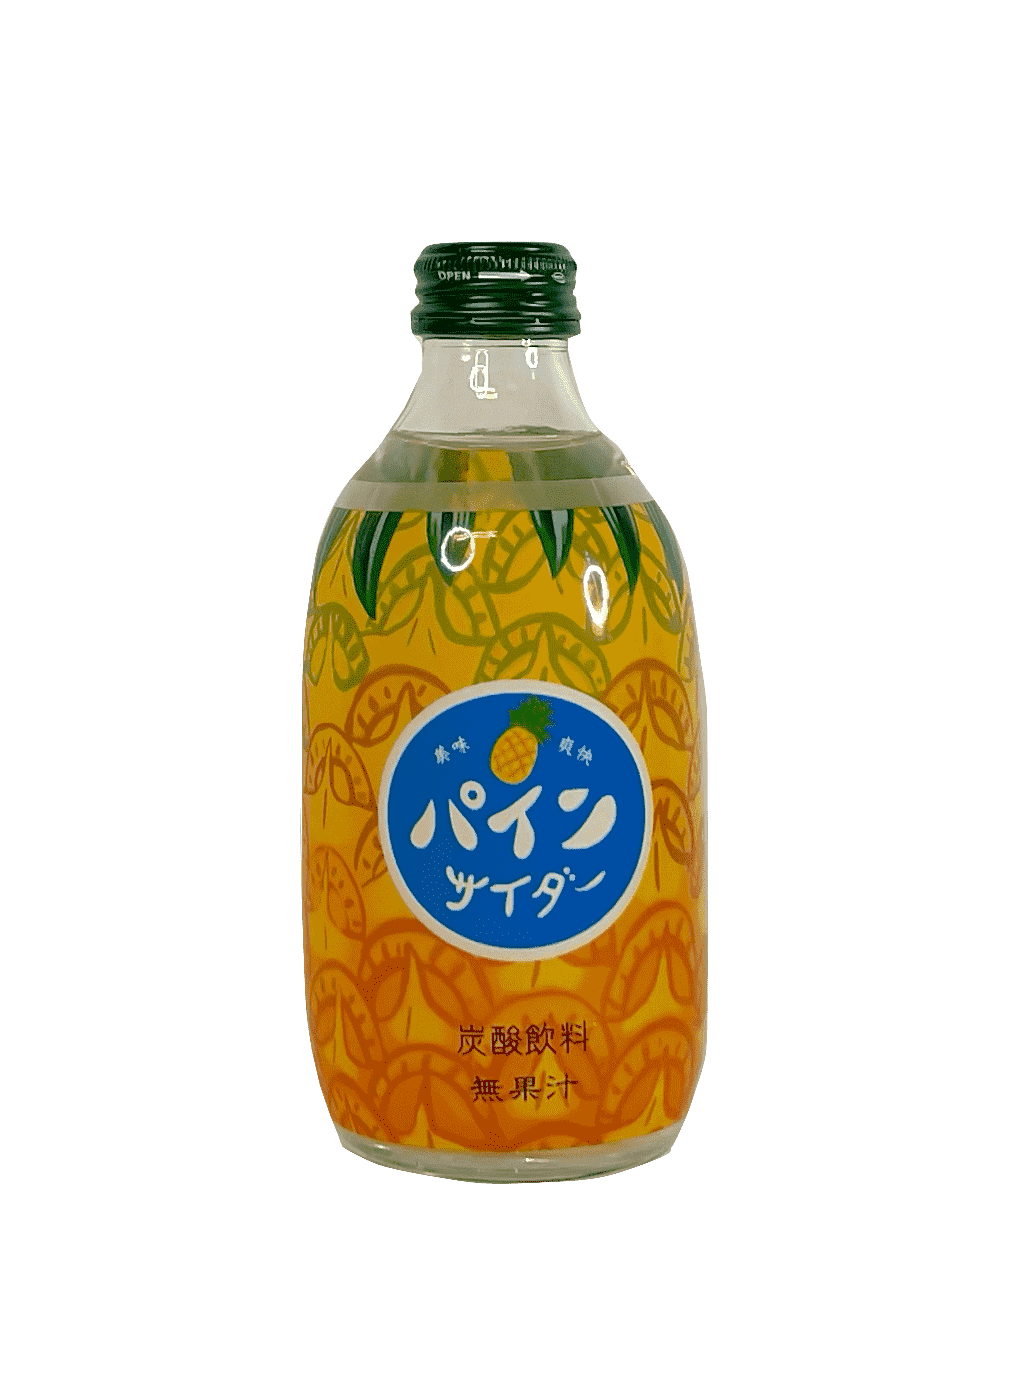 菠萝味 苏打汽水 300ml Tomomasu 日本